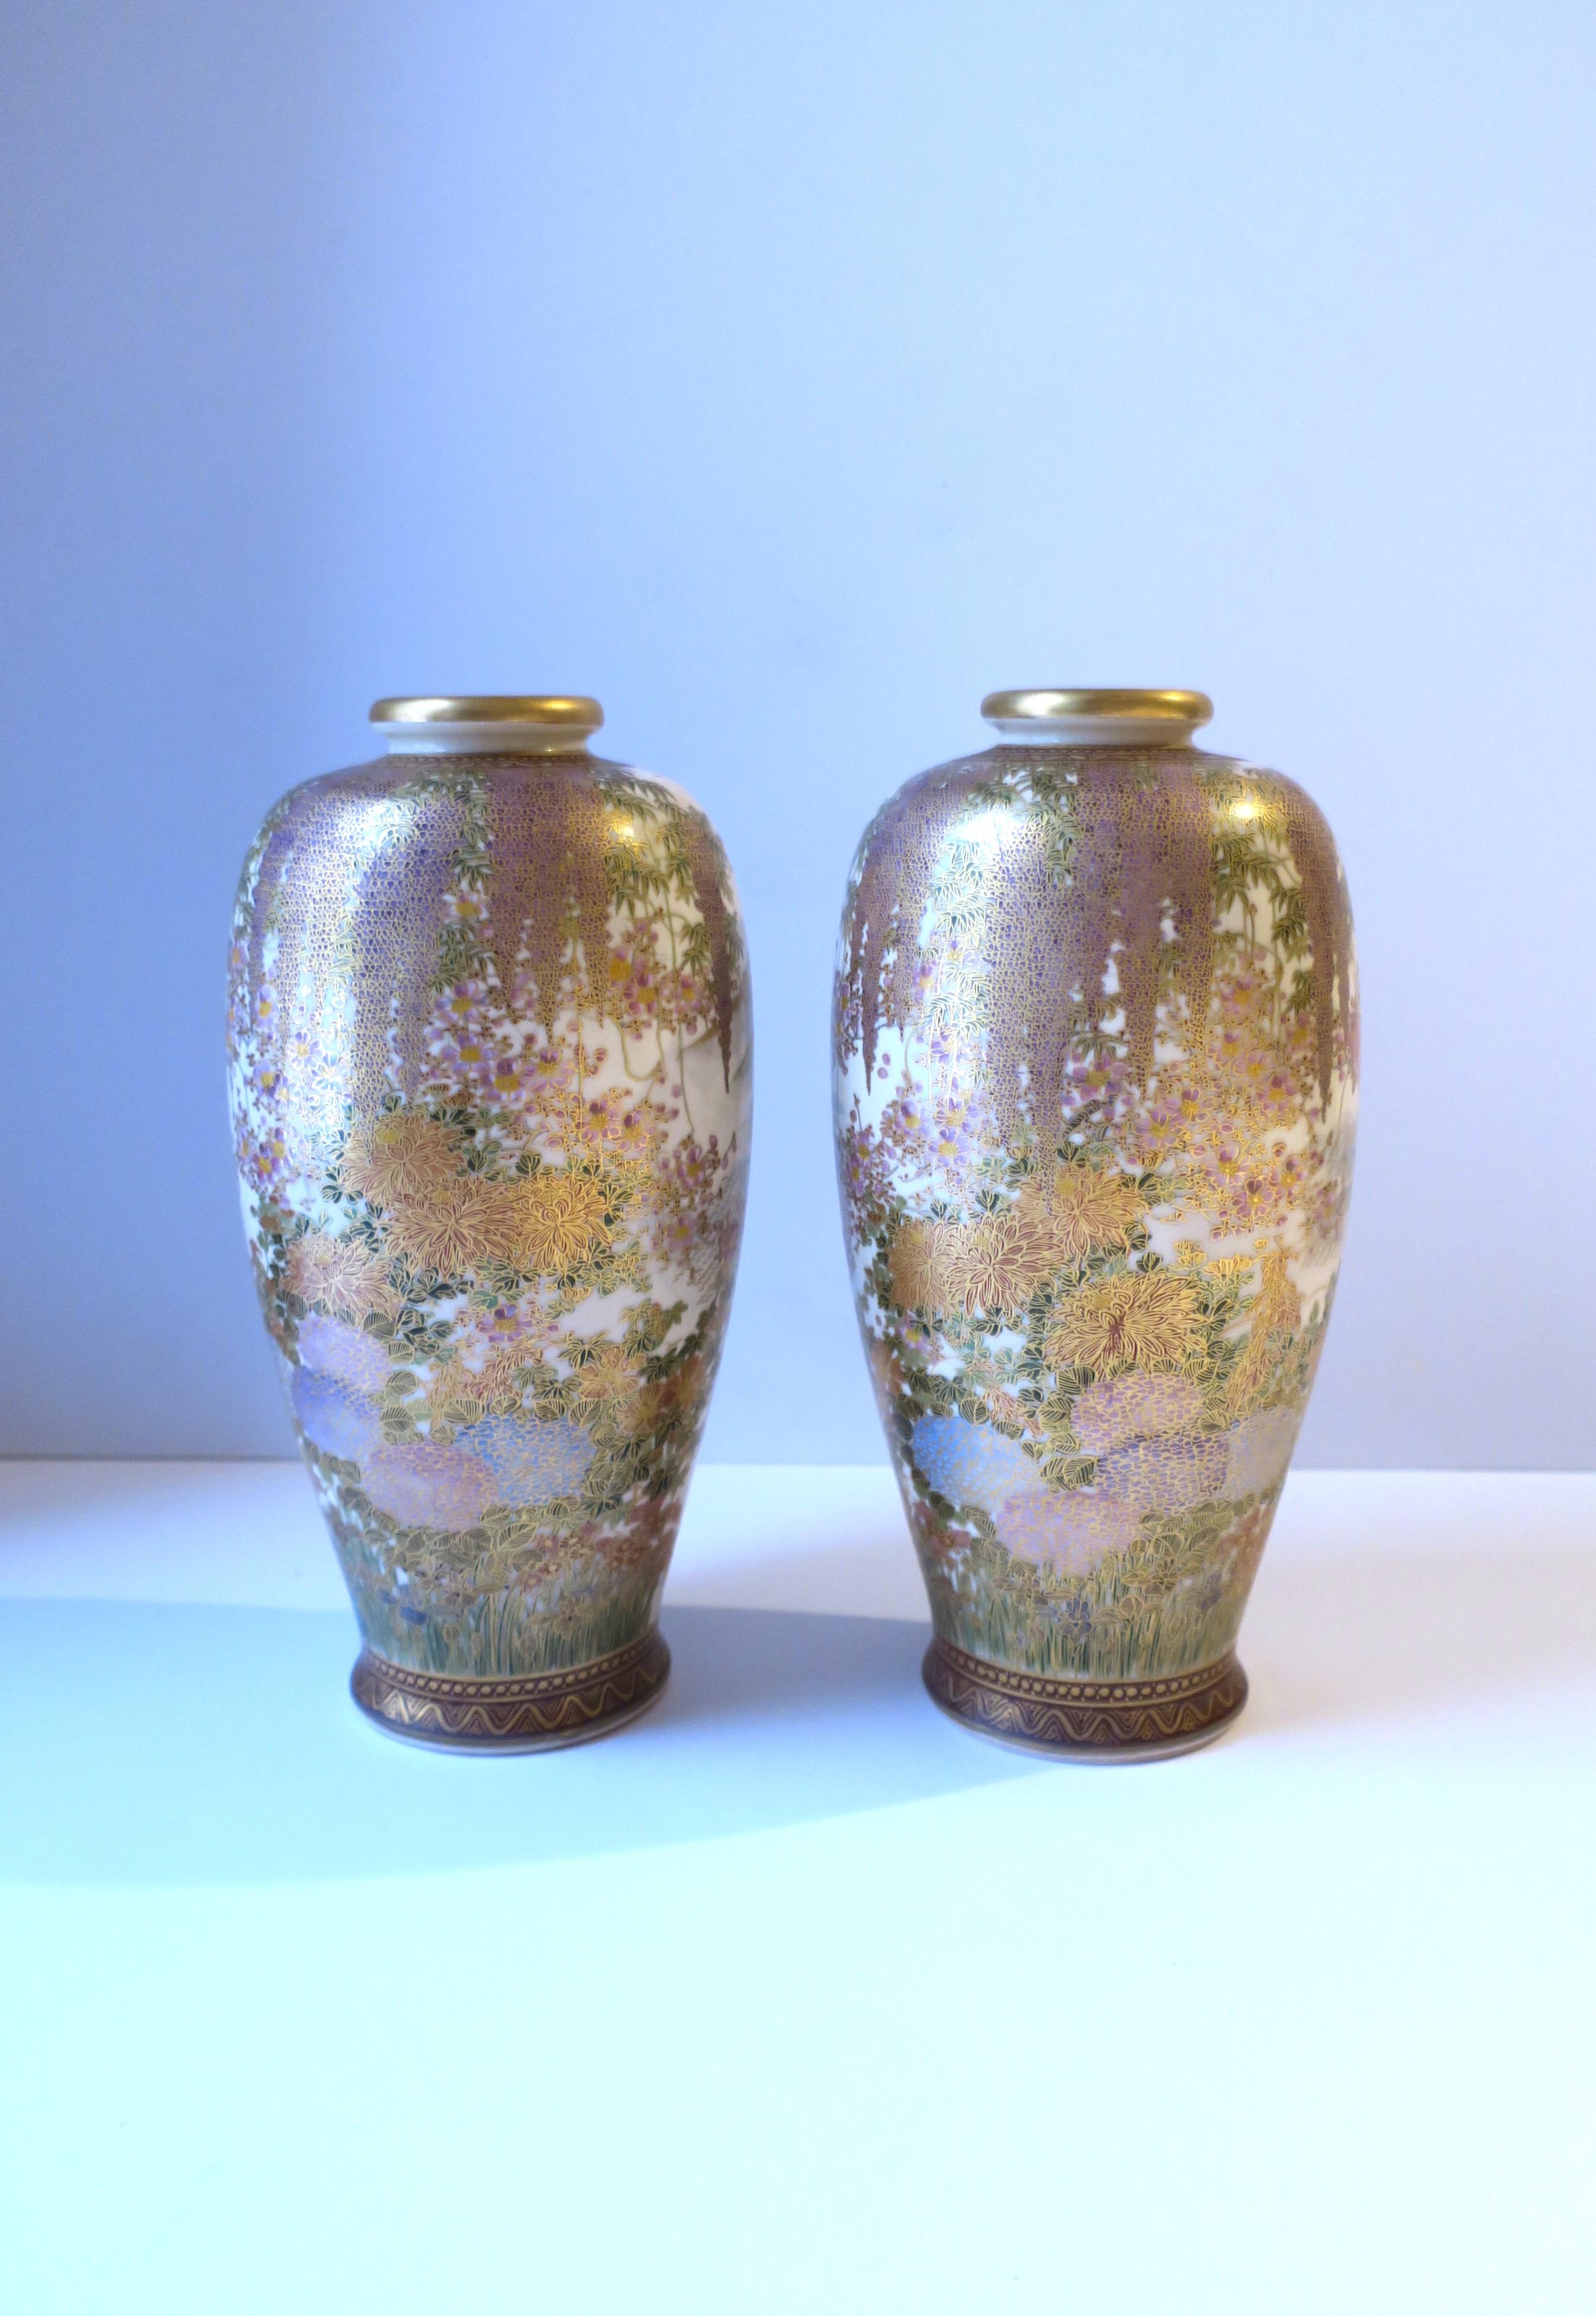 Ein wunderschönes Paar japanischer Satsuma-Vasen aus Steingut, handbemalt, Meiji-Zeit, etwa Anfang des 20. Jahrhunderts, Japan. Die schöne Dekoration der Vasen ist hochwertig und sehr detailliert, wie abgebildet. Zu den Farbnuancen gehören Goldgold,